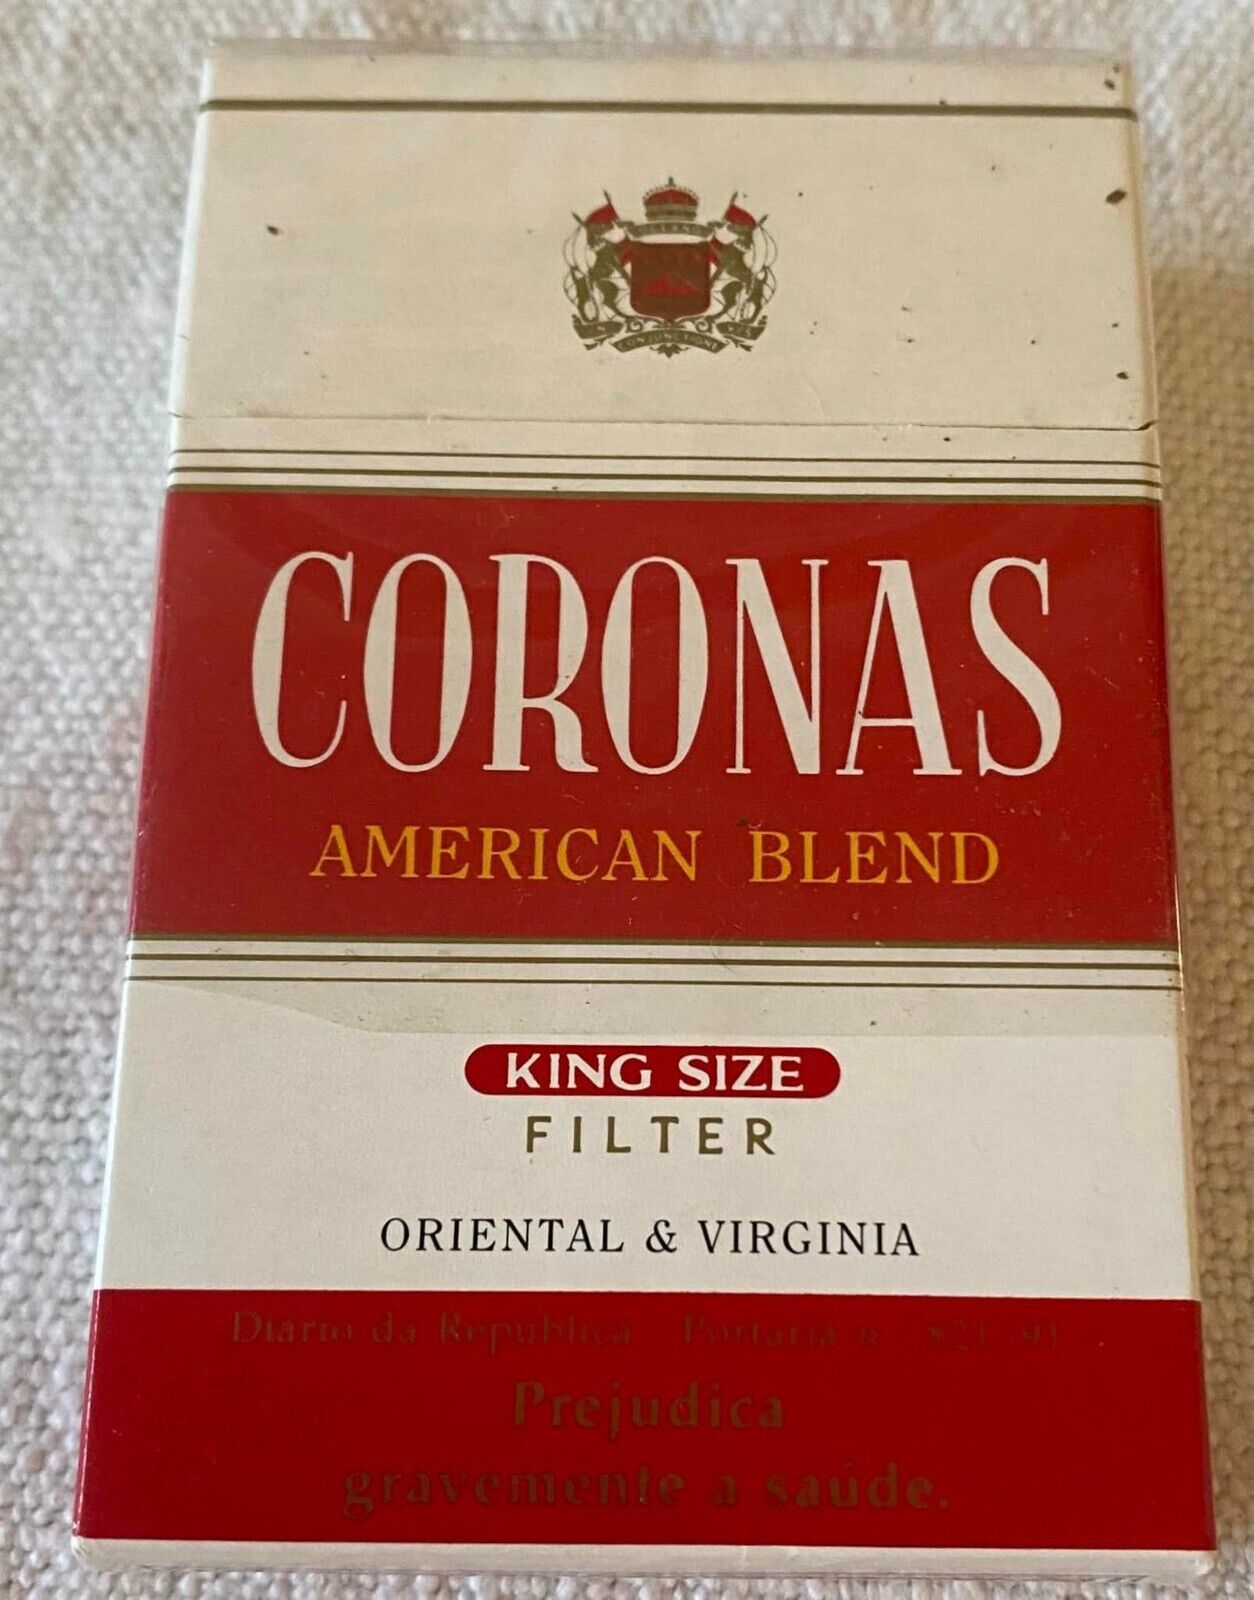 Vintage Coronas Filters Cigarette Cigarettes Cigarette Paper Box Empty Cigarette